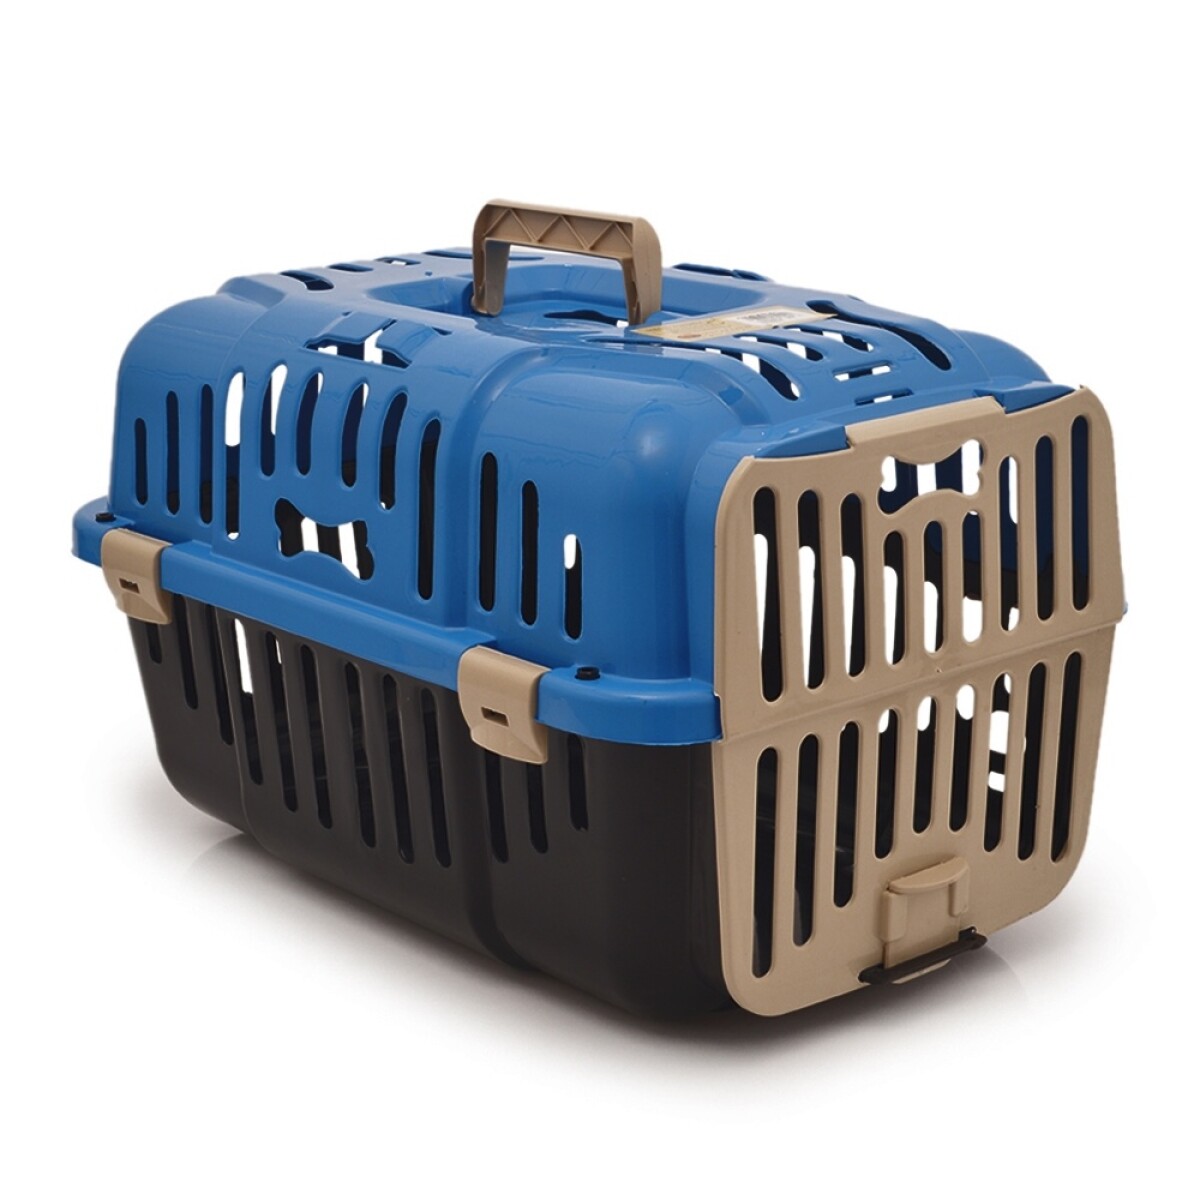 Transportadora Jaula Plástica Rígida para Mascotas Pequeñas - Azul 